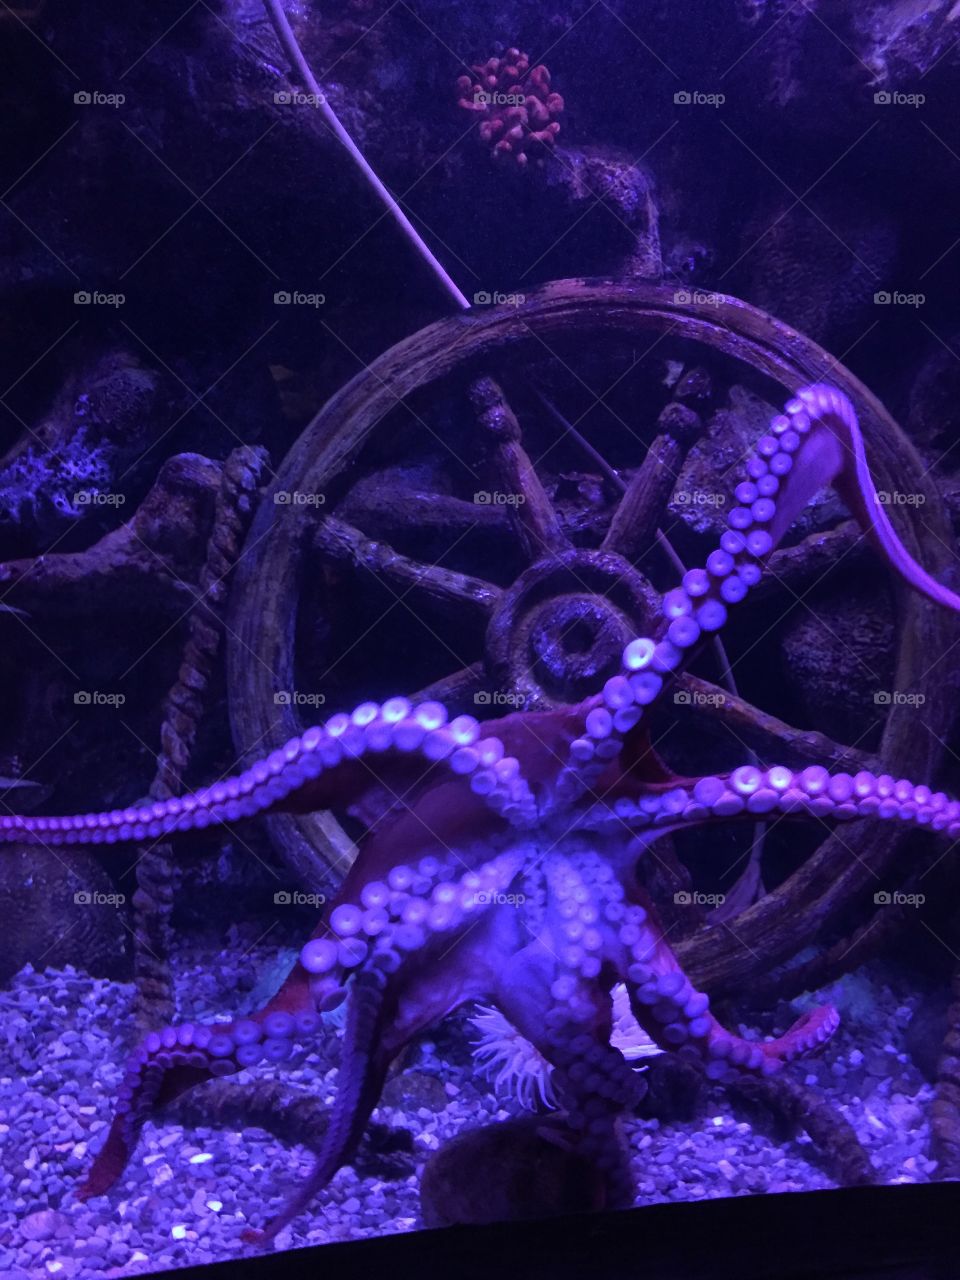 Gigantic octopus 
